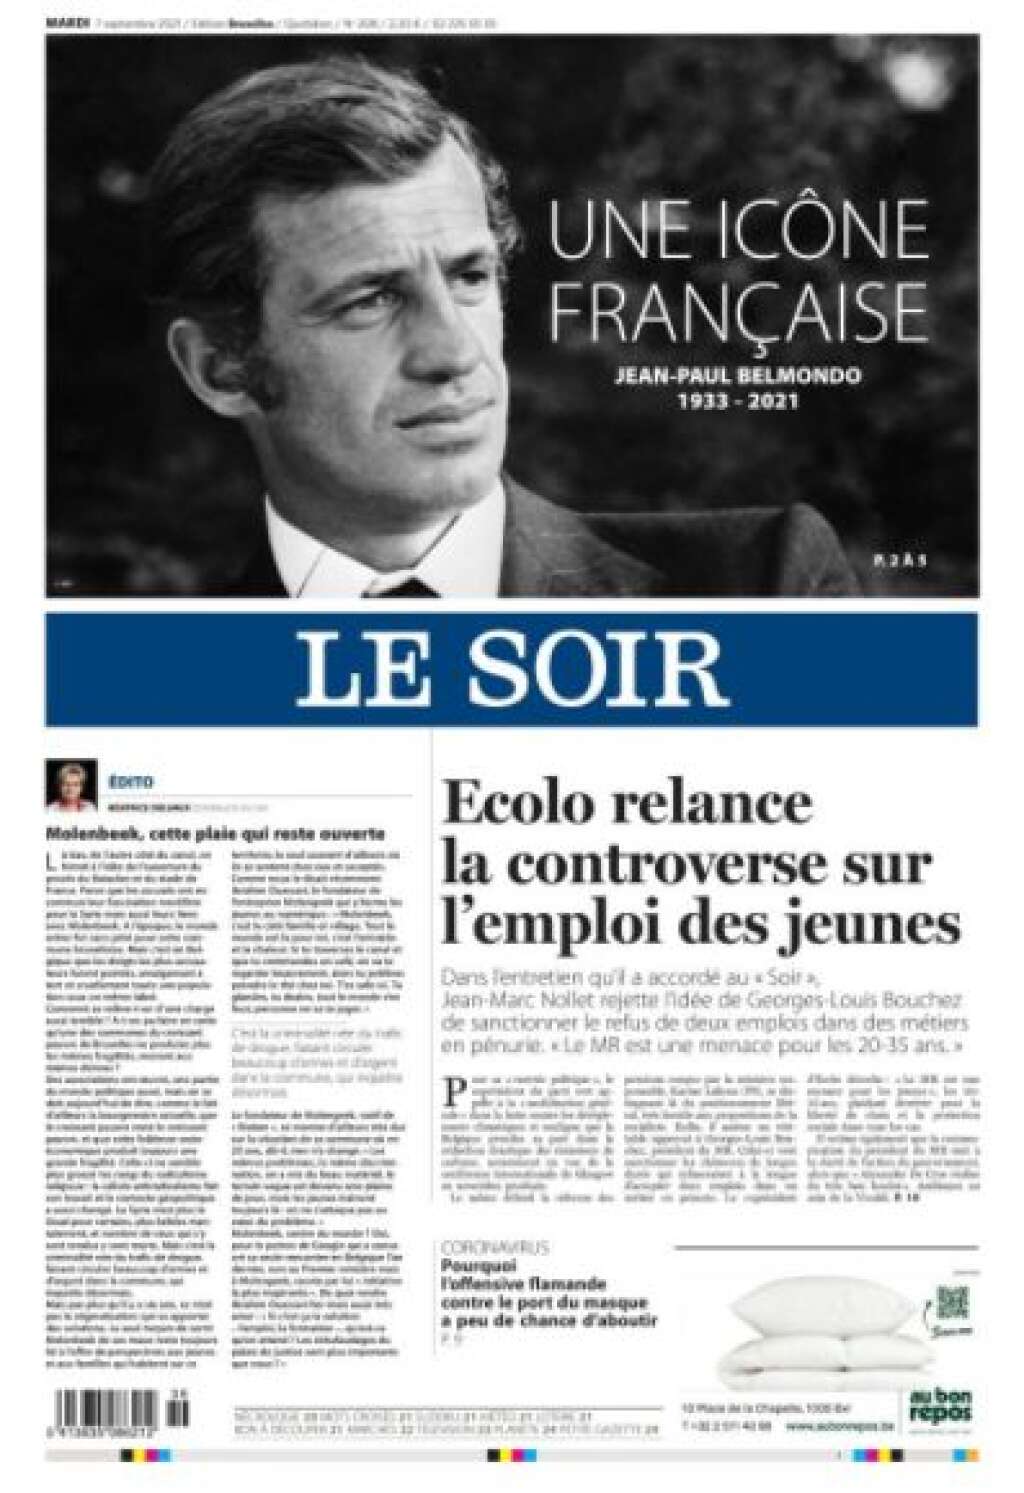 Le Soir - En Belgique, Le Soir rend hommage à "une icône française".